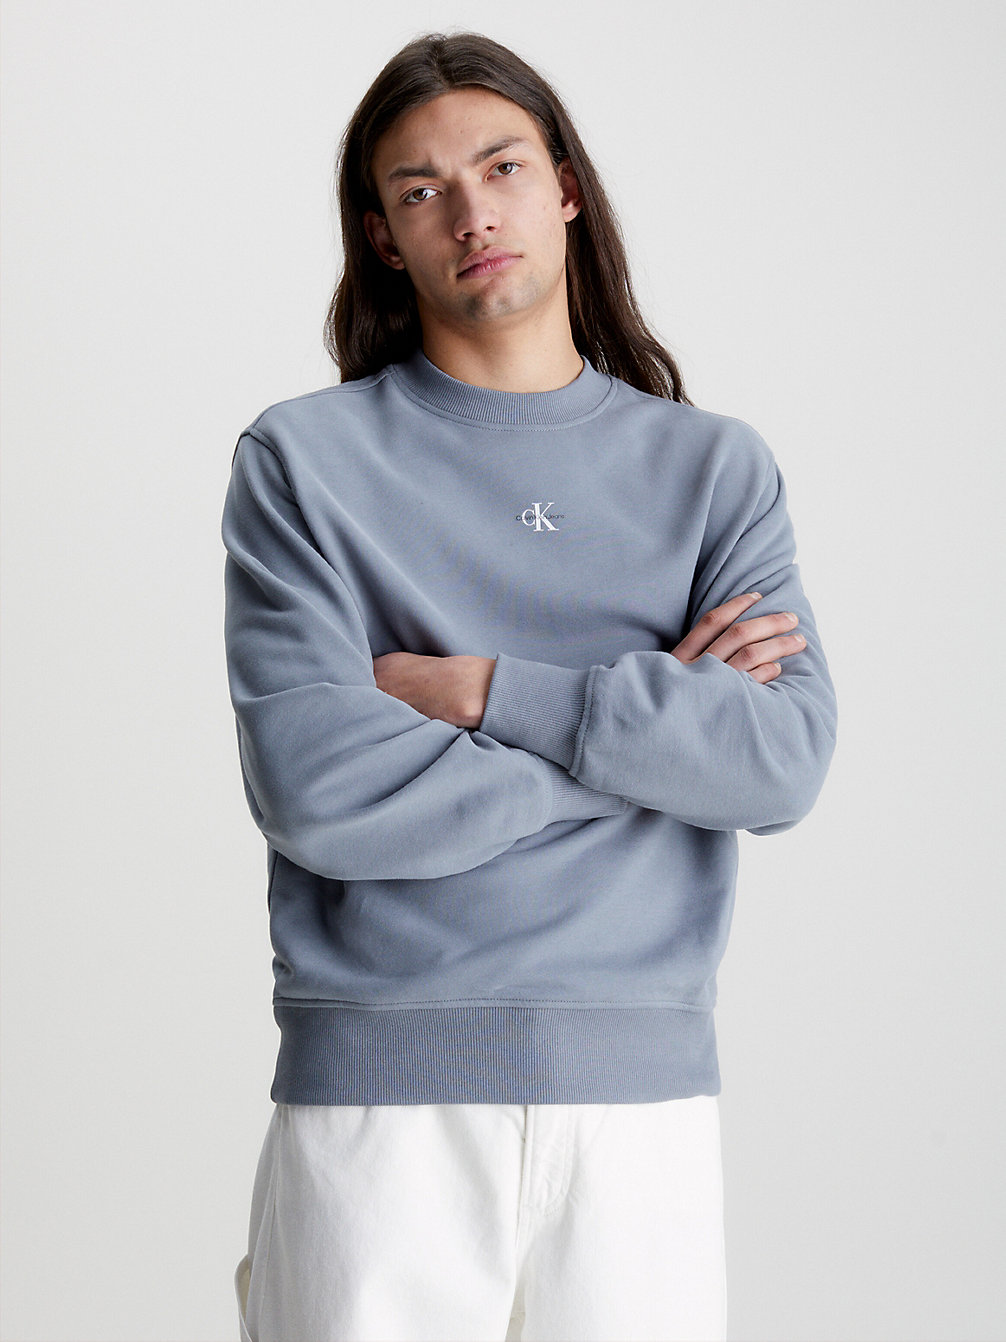 OVERCAST GREY > Lässiges Monogramm-Sweatshirt > undefined men - Calvin Klein